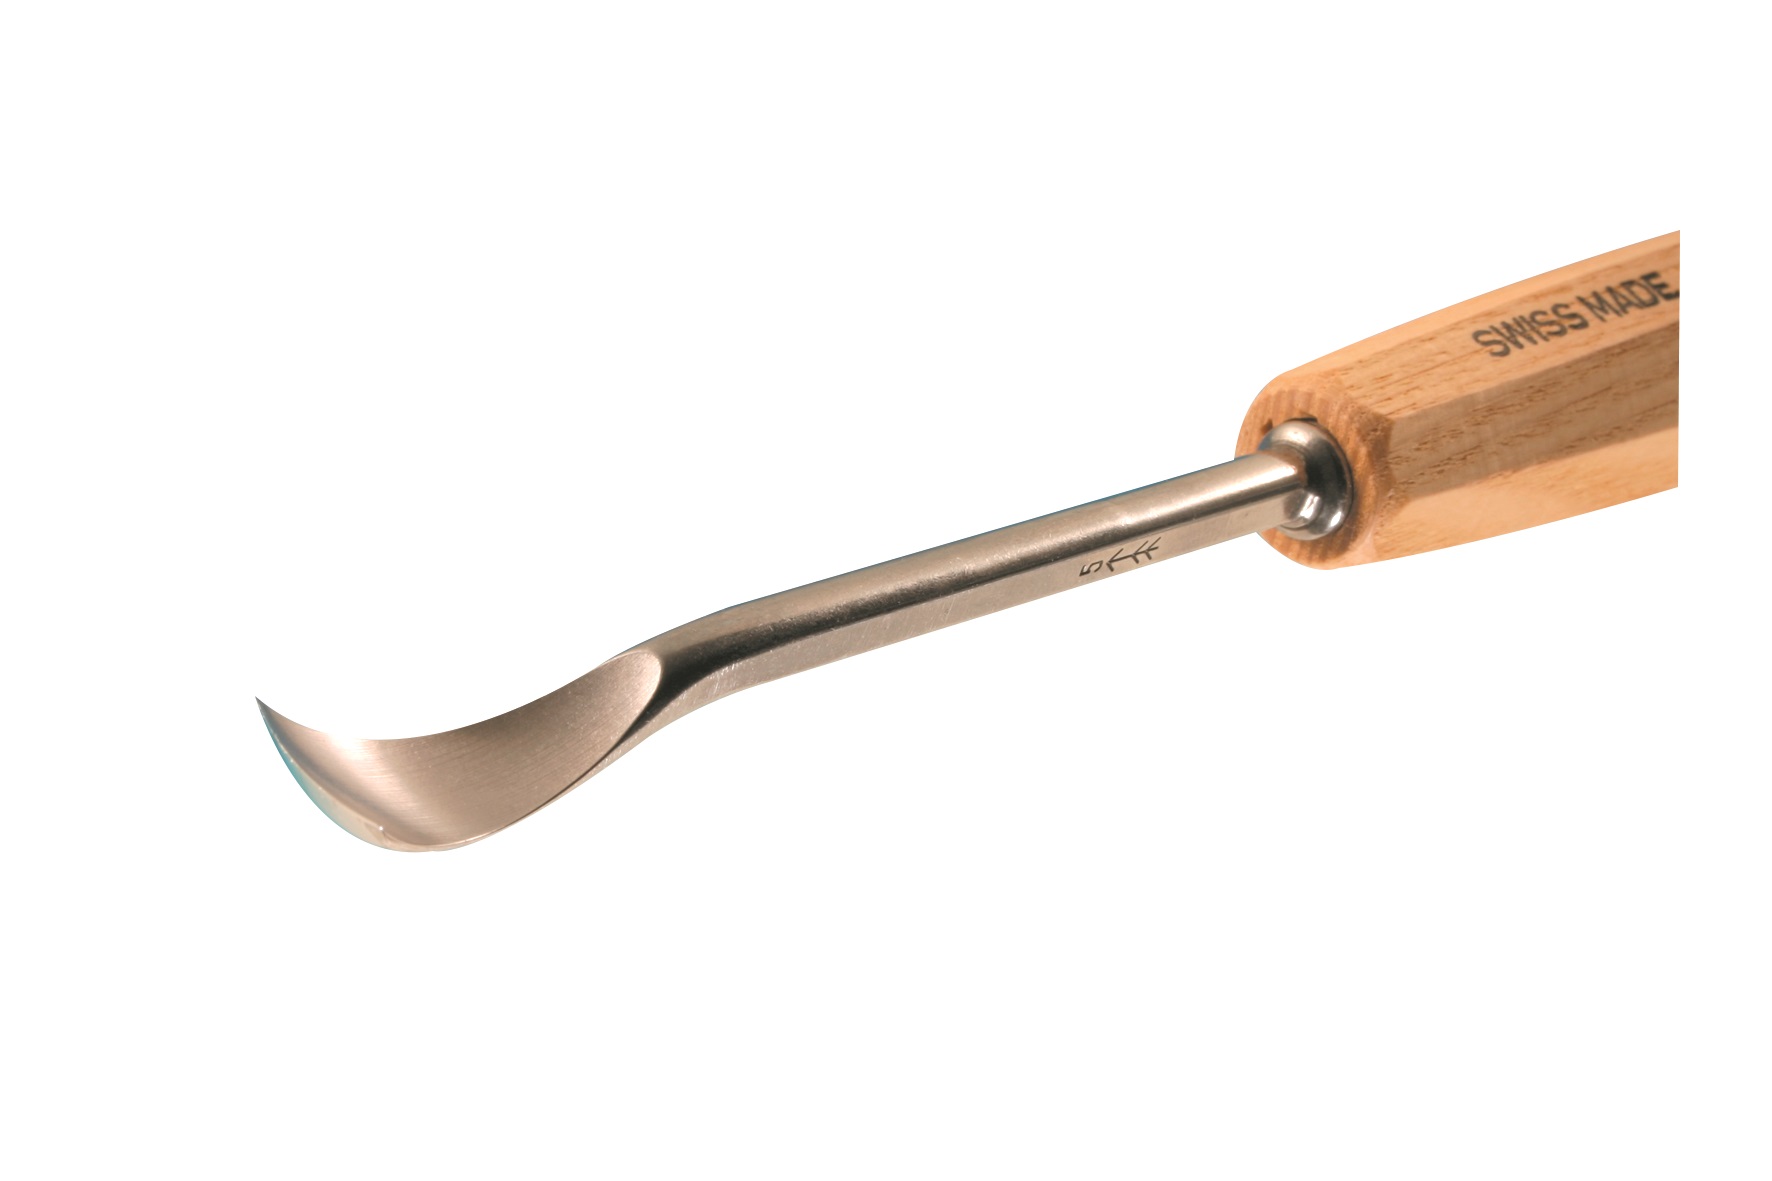 Pfeil Spoon Bent Gouge No.8a - 18mm